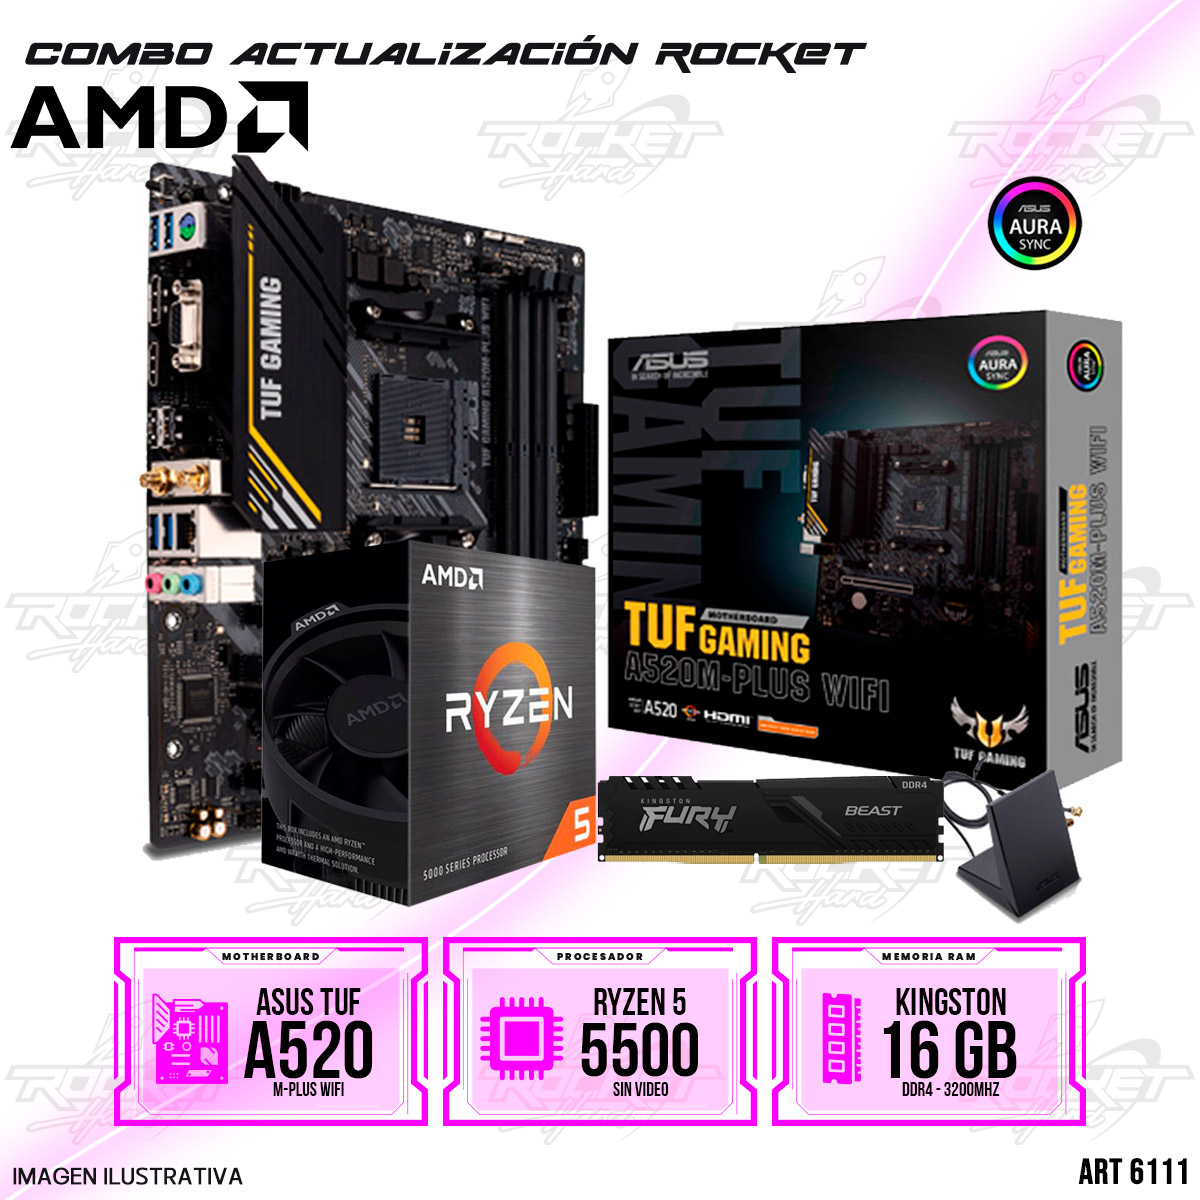 COMBO ROCKET AMD RYZEN 5 5500 - A520 WIFI -16GB RAM